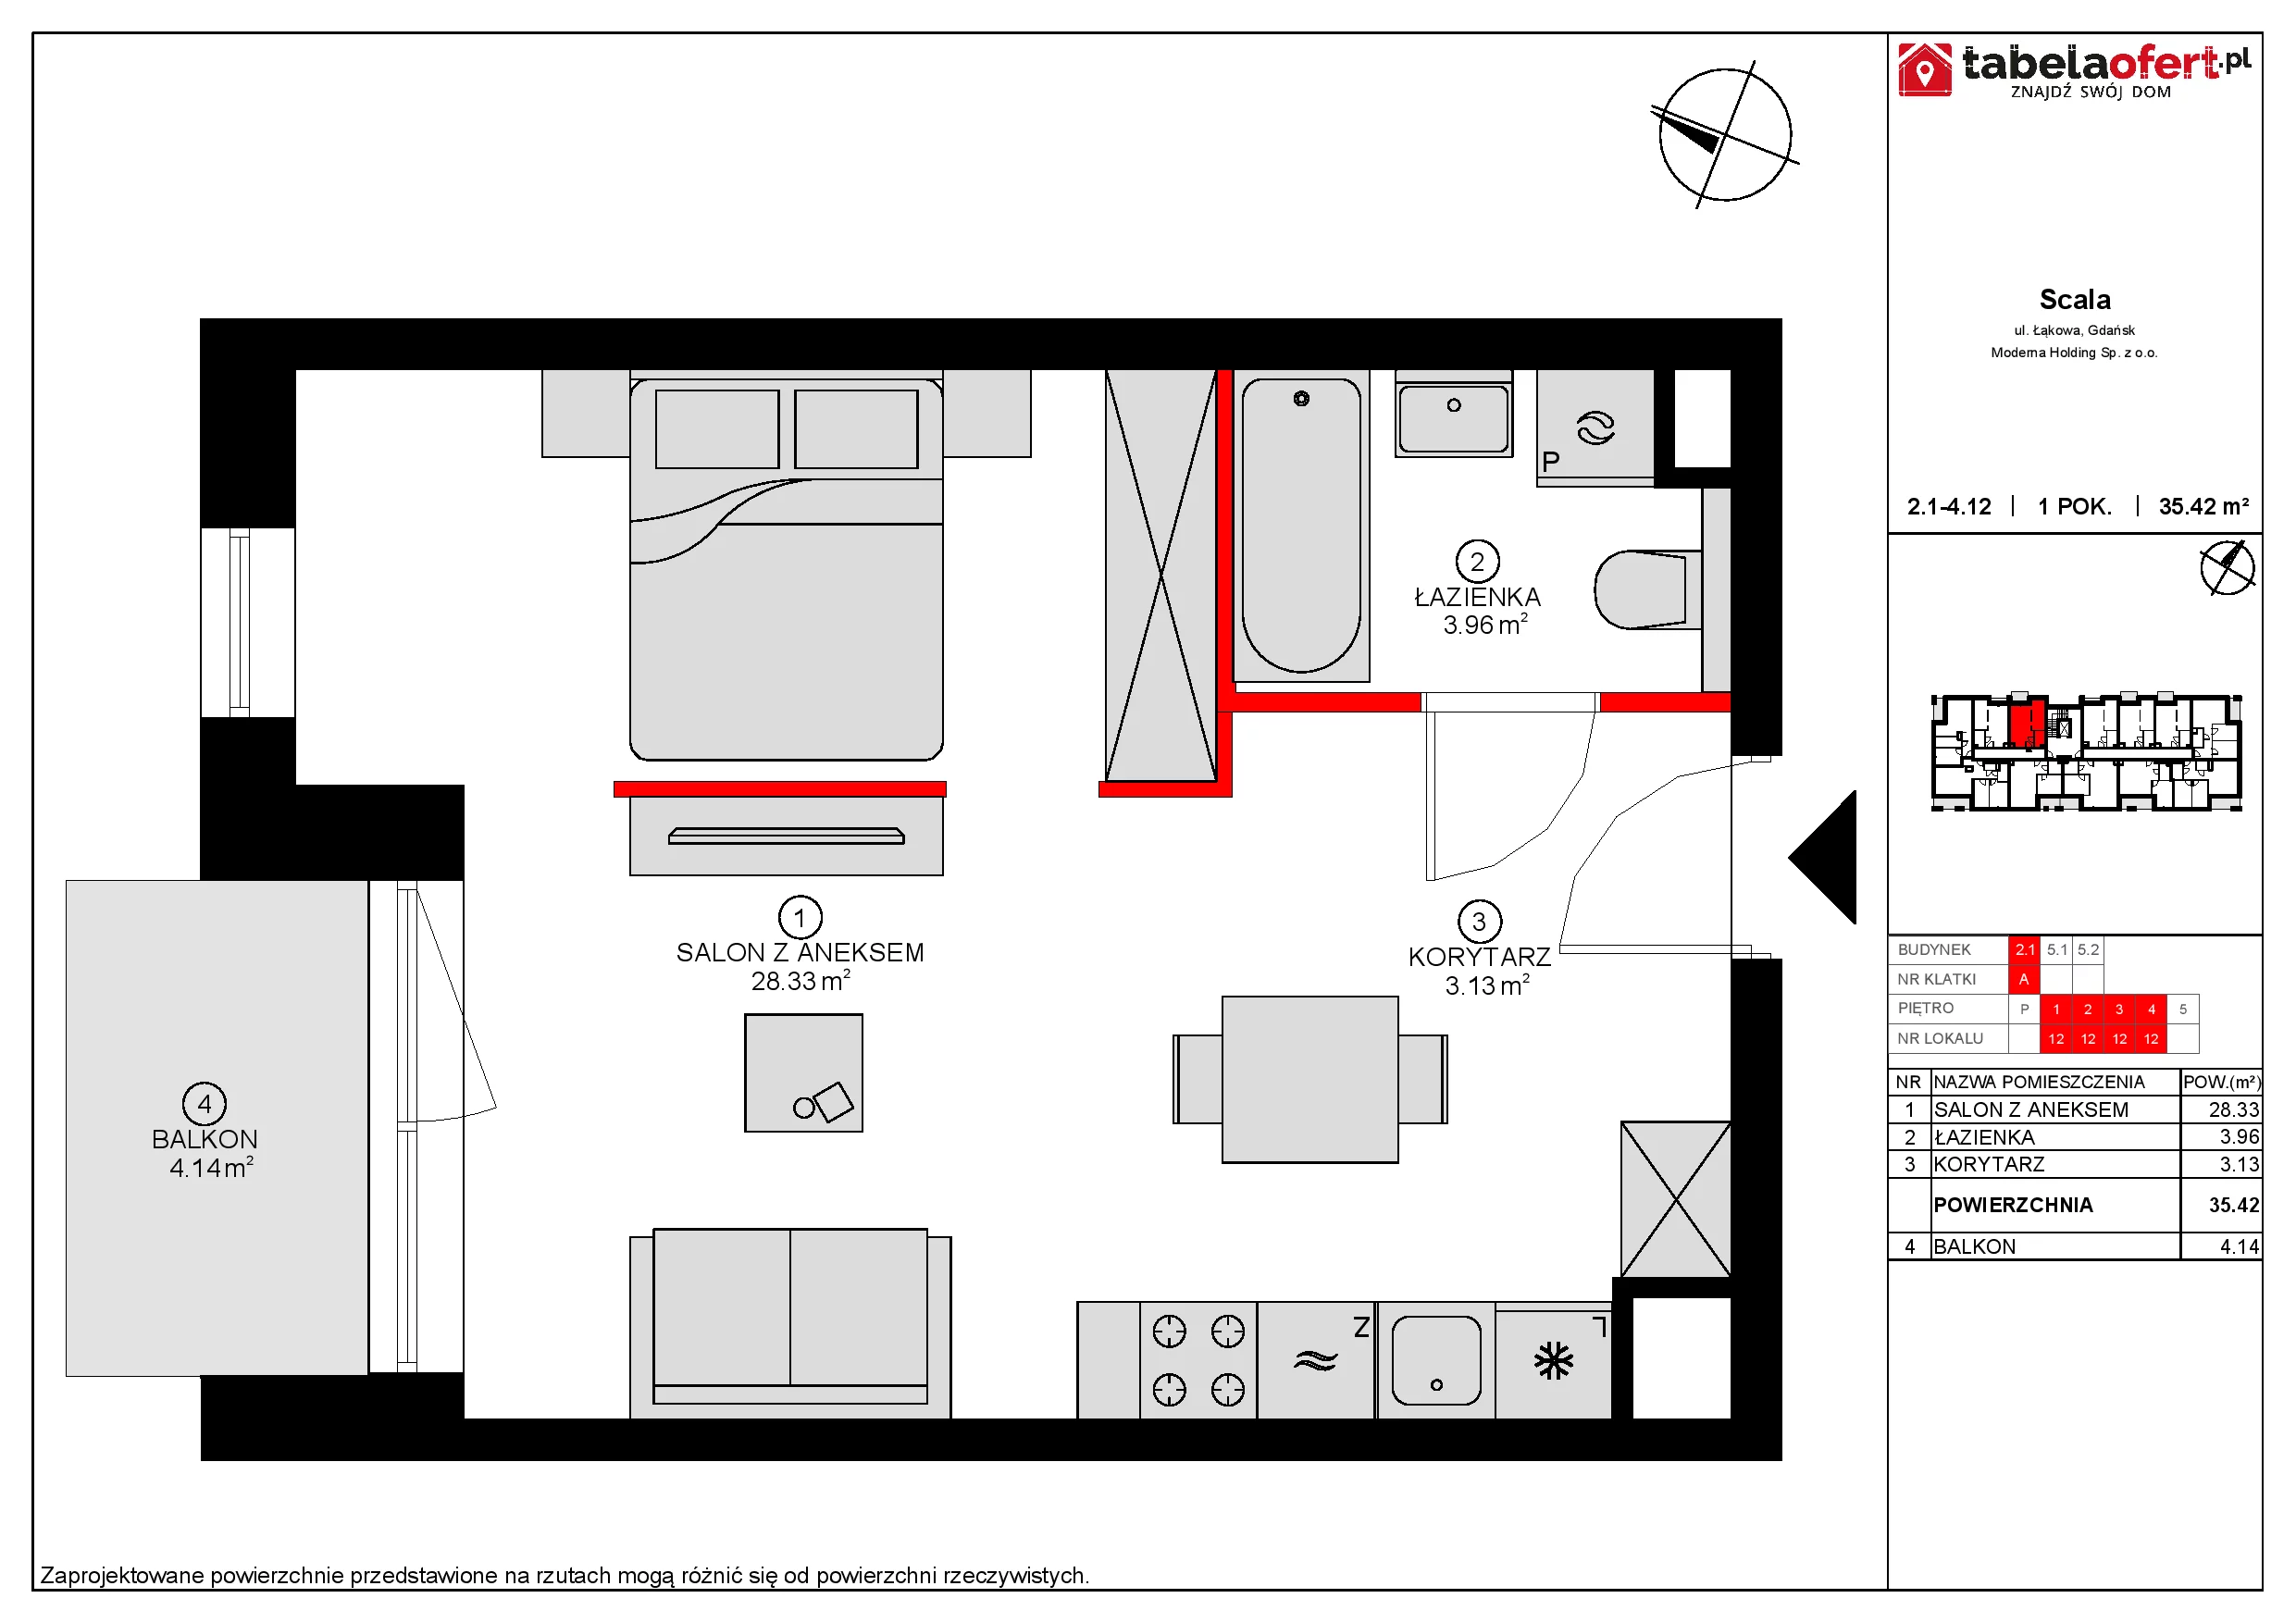 Apartament 36,02 m², piętro 4, oferta nr 2.1-4.12., Scala, Gdańsk, Śródmieście, ul. Łąkowa 60C